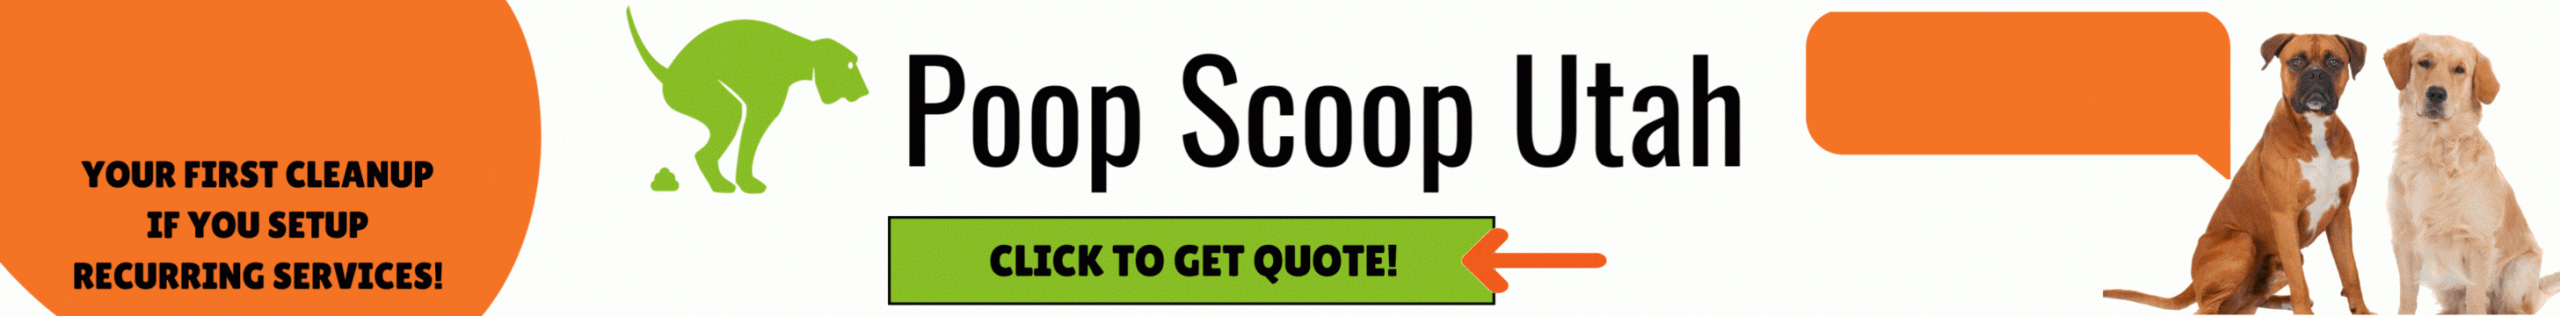 Poop Scoop Utah Dog Friendly Website Banner (2912 x 360 px)